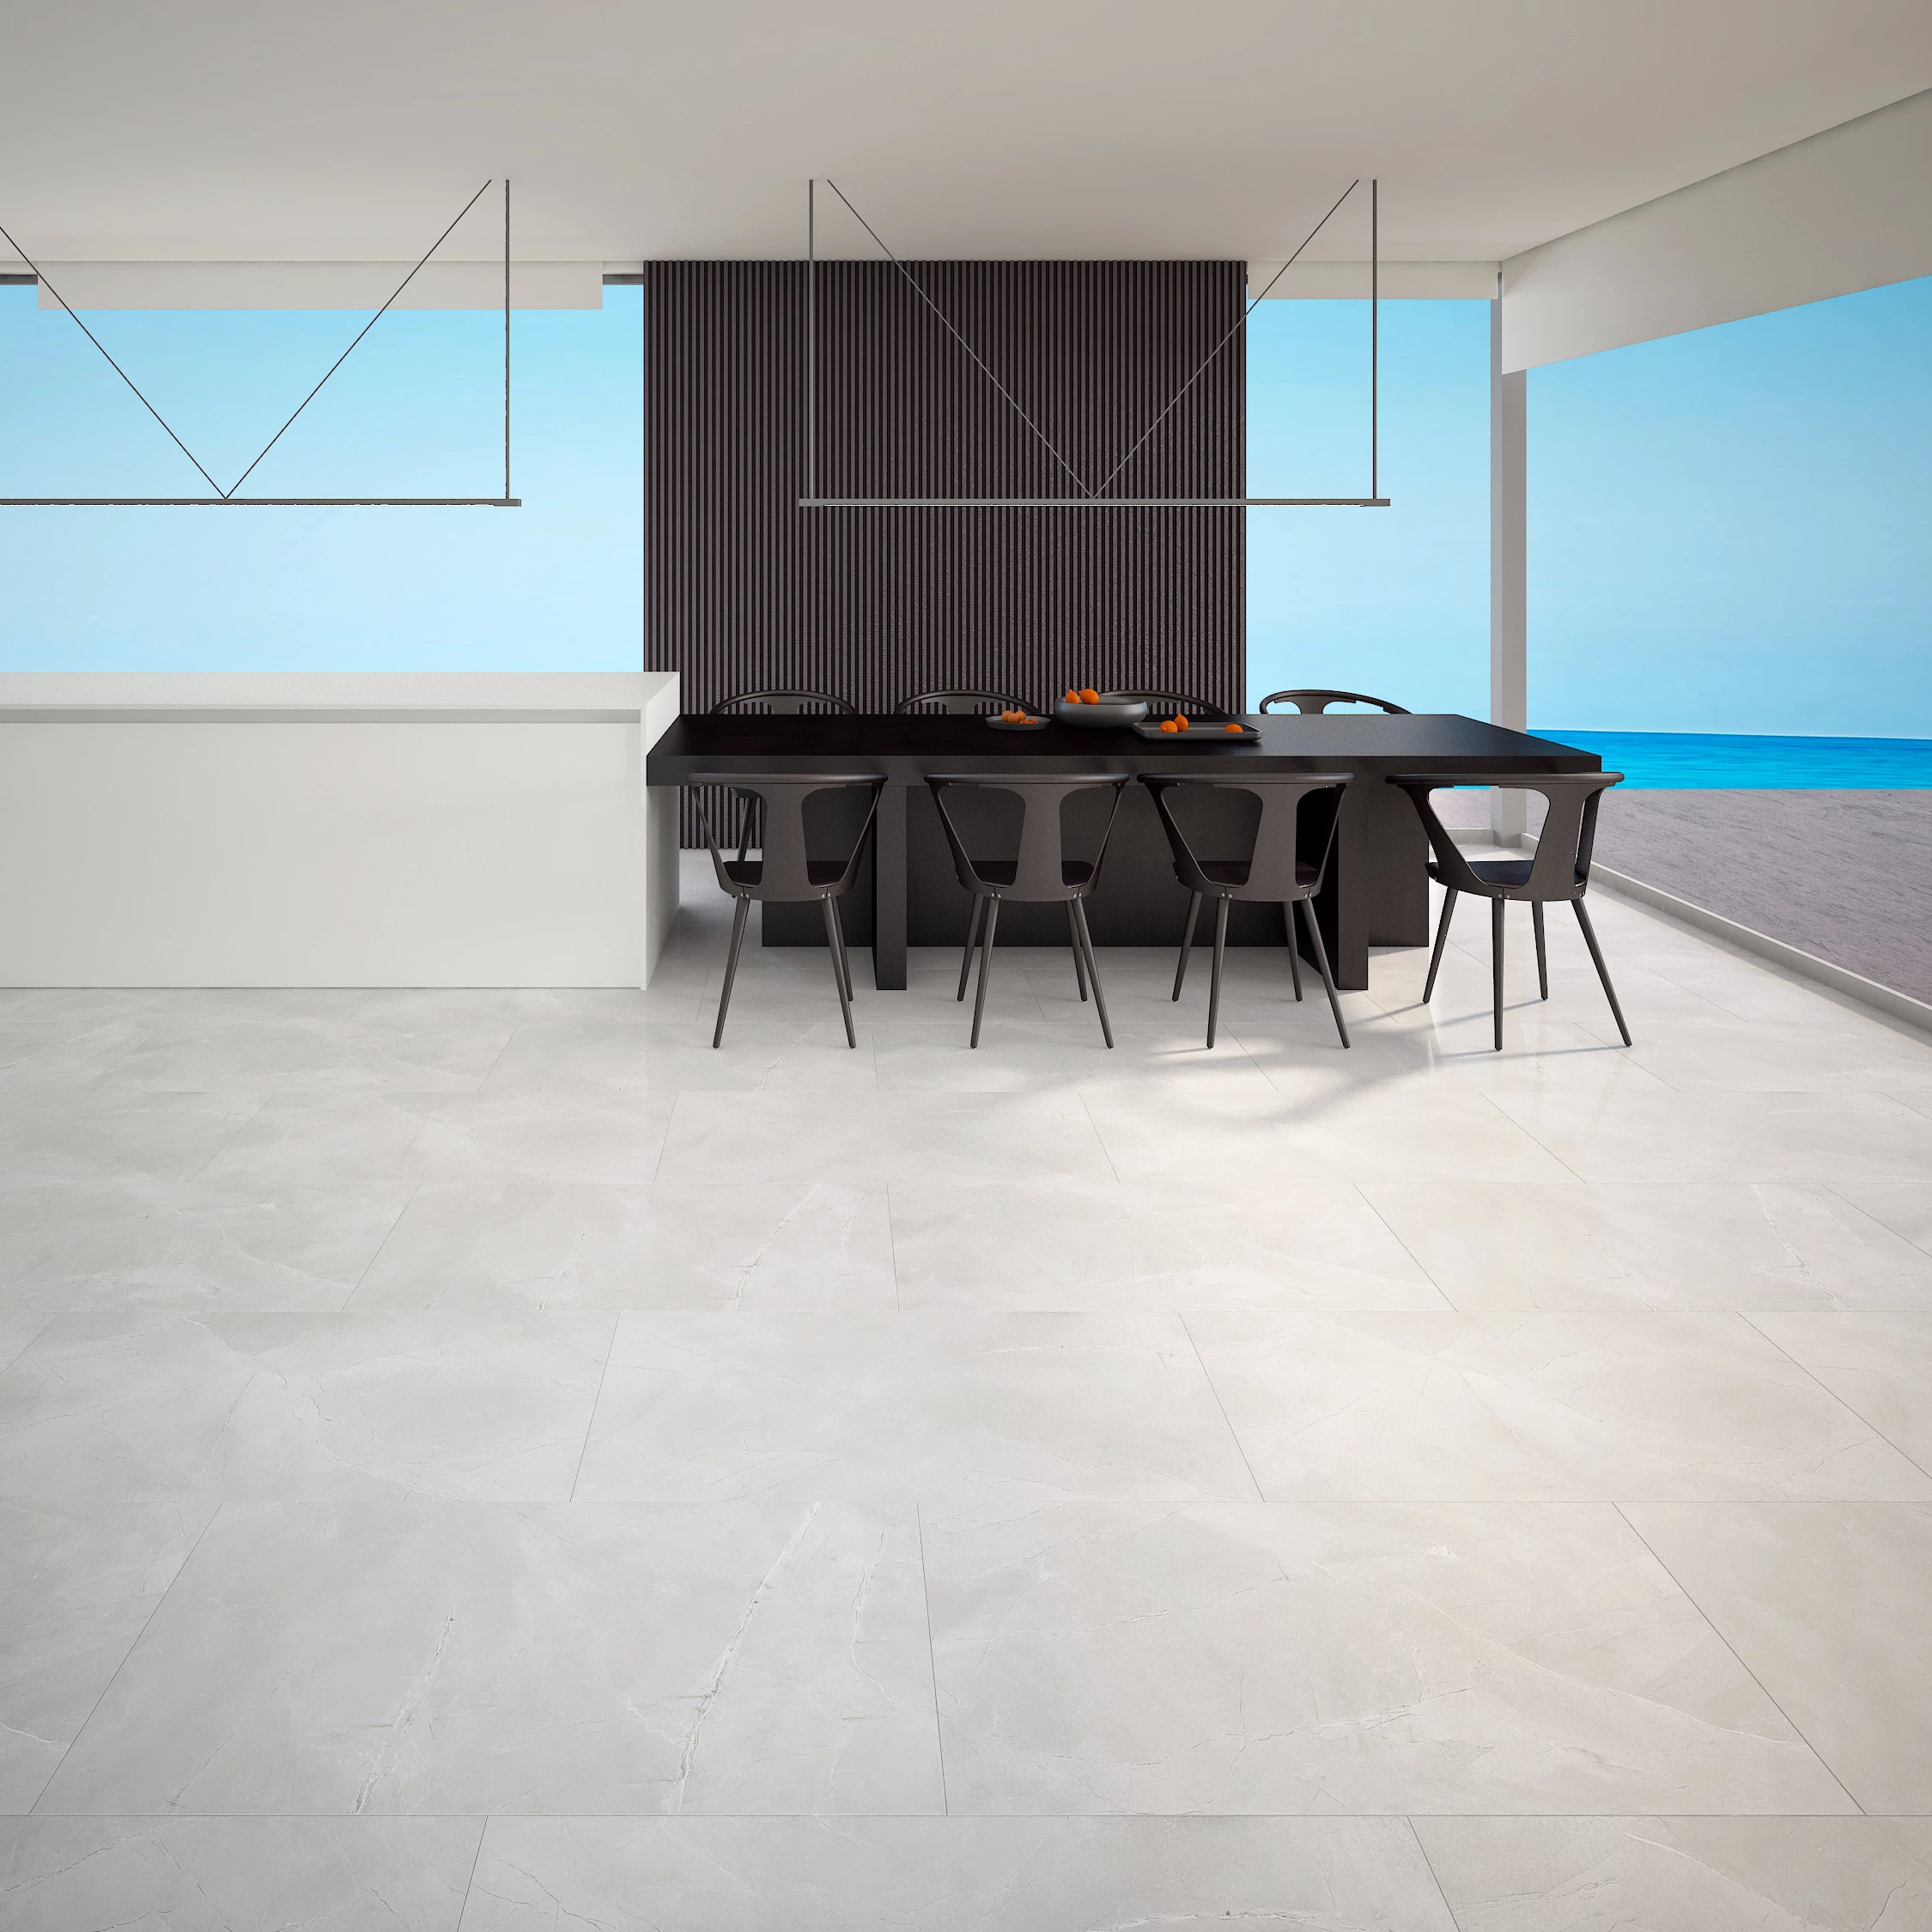 600x1200mm Light Grey Color Porcelain Floor Tiles Polished Granite Floor Tiles For Living Room Buy Polished Granite Floor Tiles For Living Room Outdoor Floor Tiles Light Grey Color Floor Tiles Product On Alibaba Com